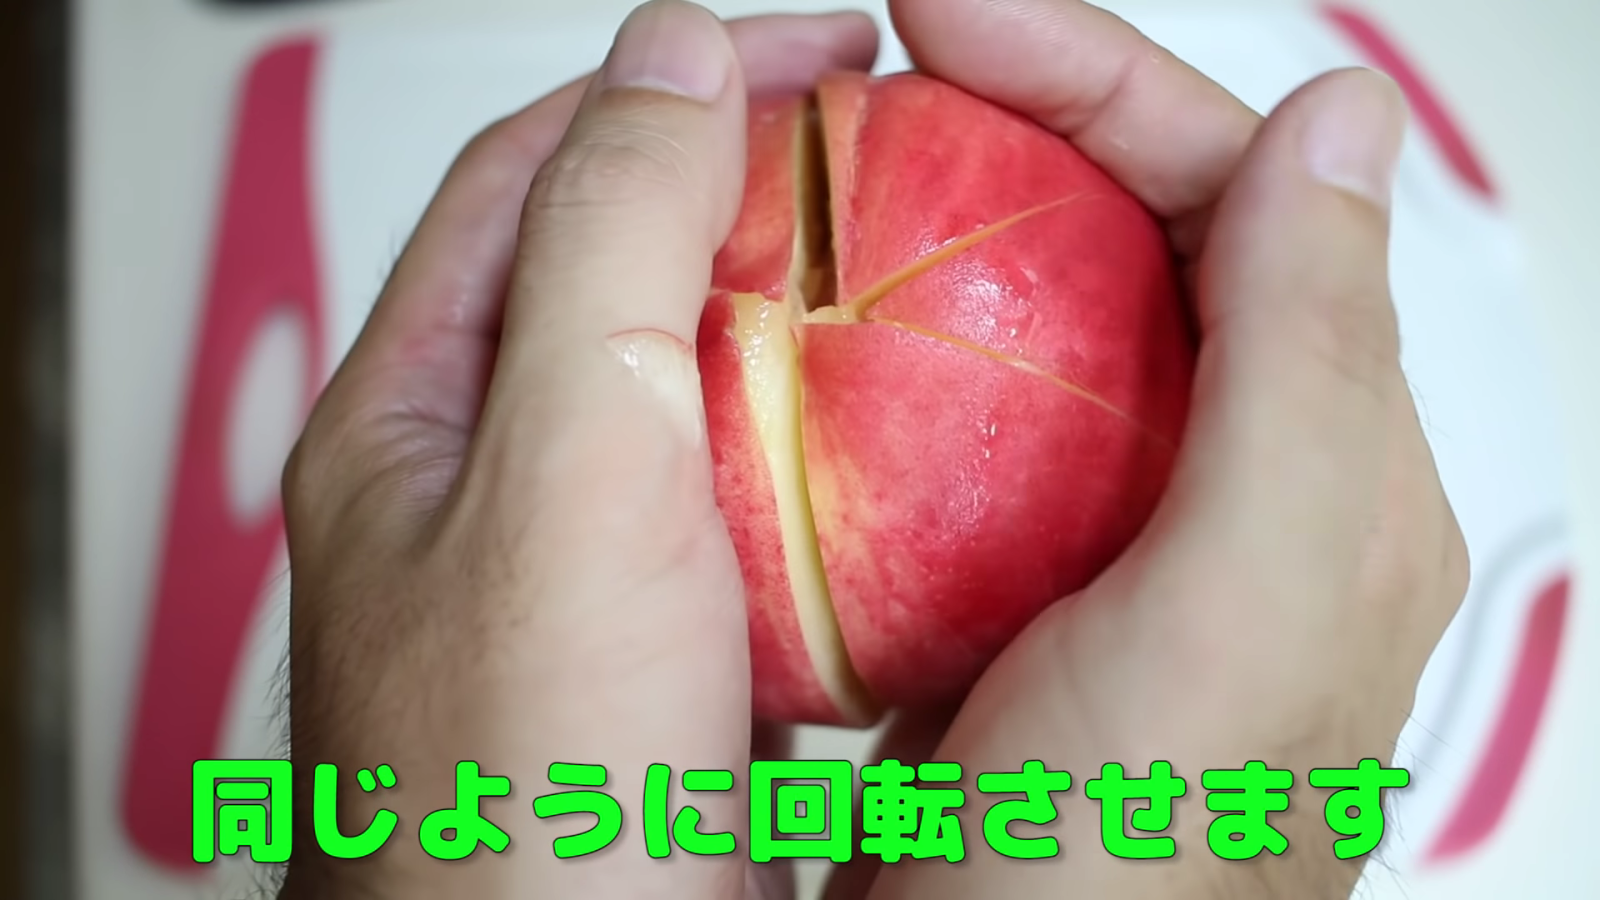 桃に包丁を入れる男性